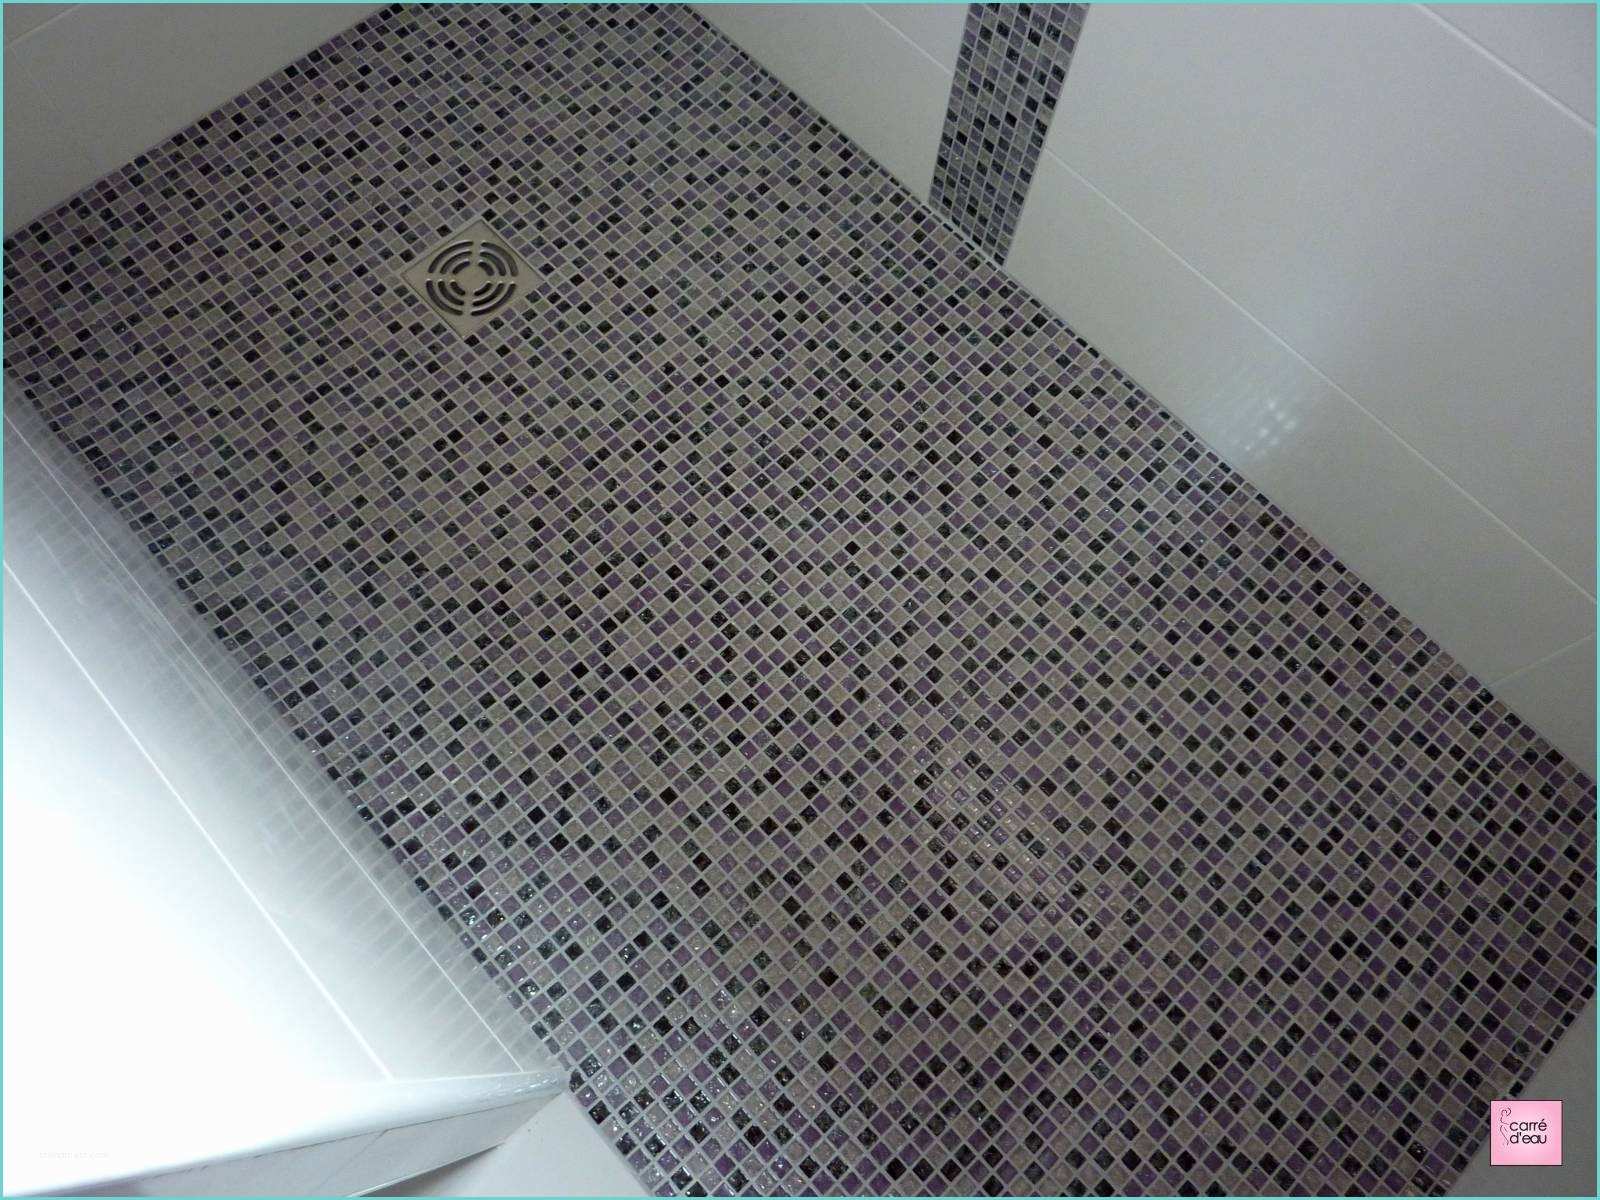 Douche A Litalienne Avec Mosaique Douche à L Italienne Avec Mosaique De Verre Violette à